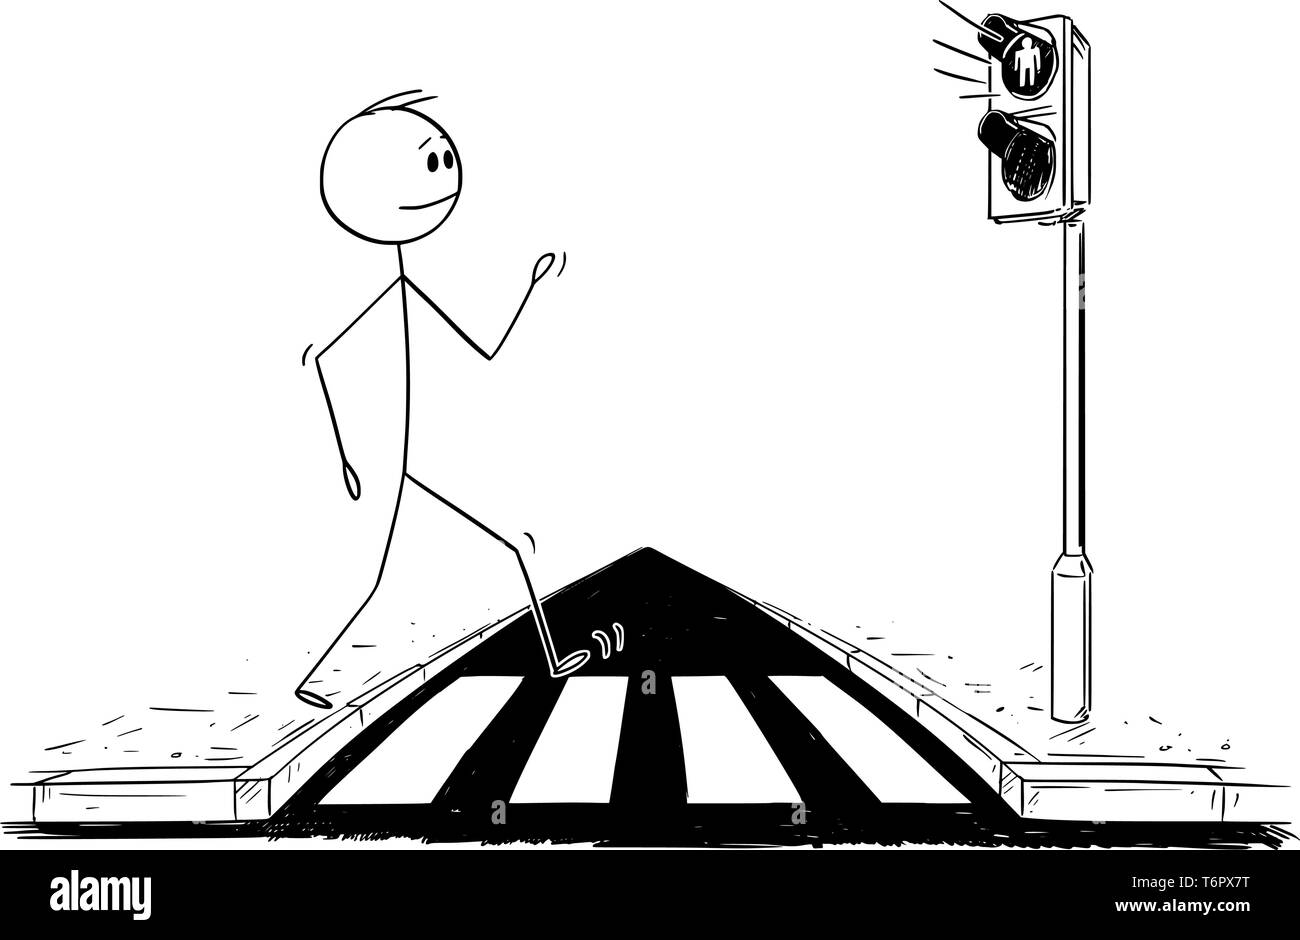 Cartoon stick figure dessin illustration conceptuelle de l'homme marche sur concordance ou passage piétons ignorant que le voyant rouge est allumé sur les feux. Illustration de Vecteur